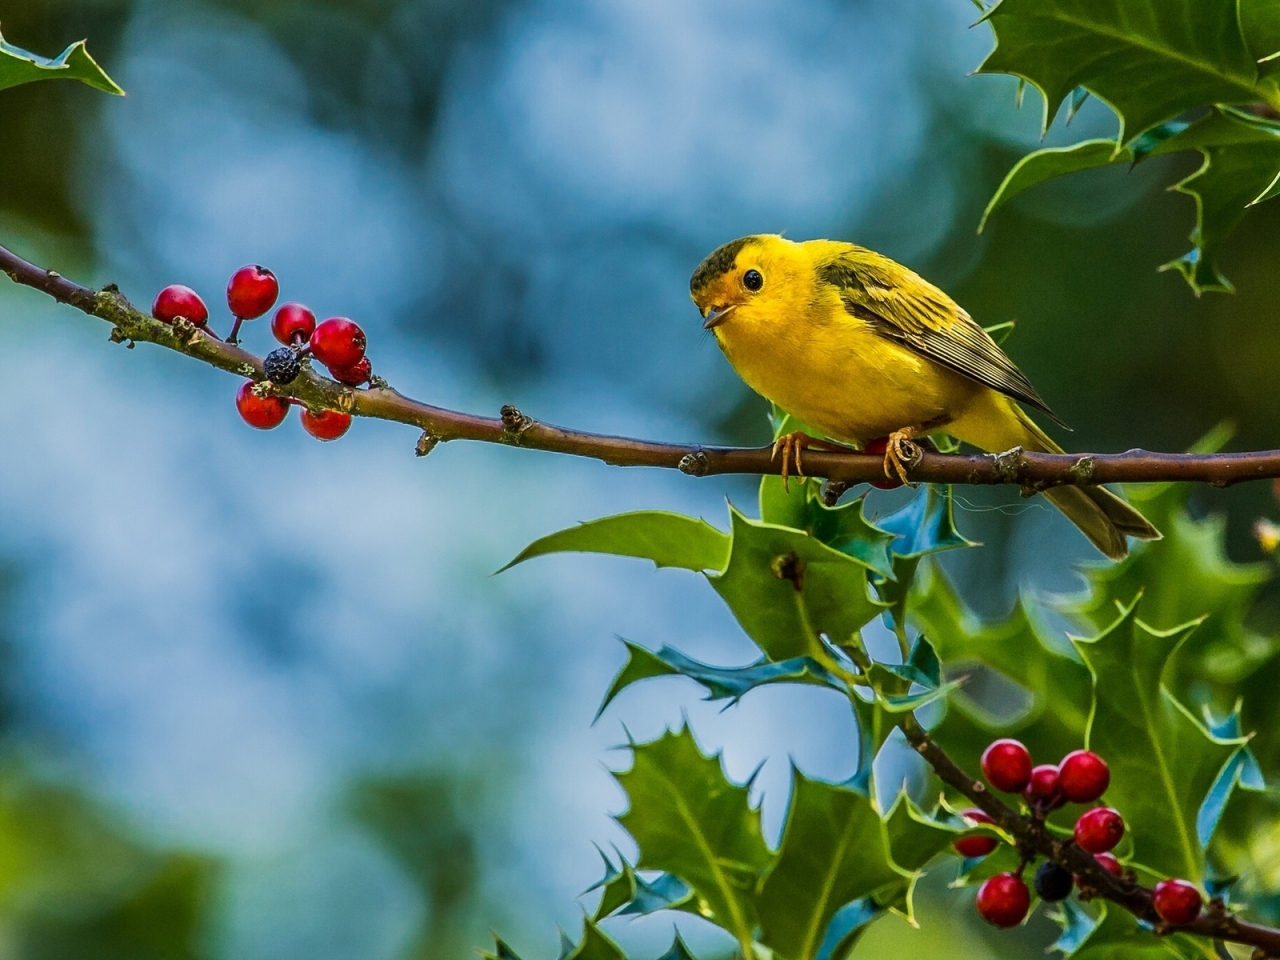 Cute Little Yellow Bird for 1280 x 960 resolution